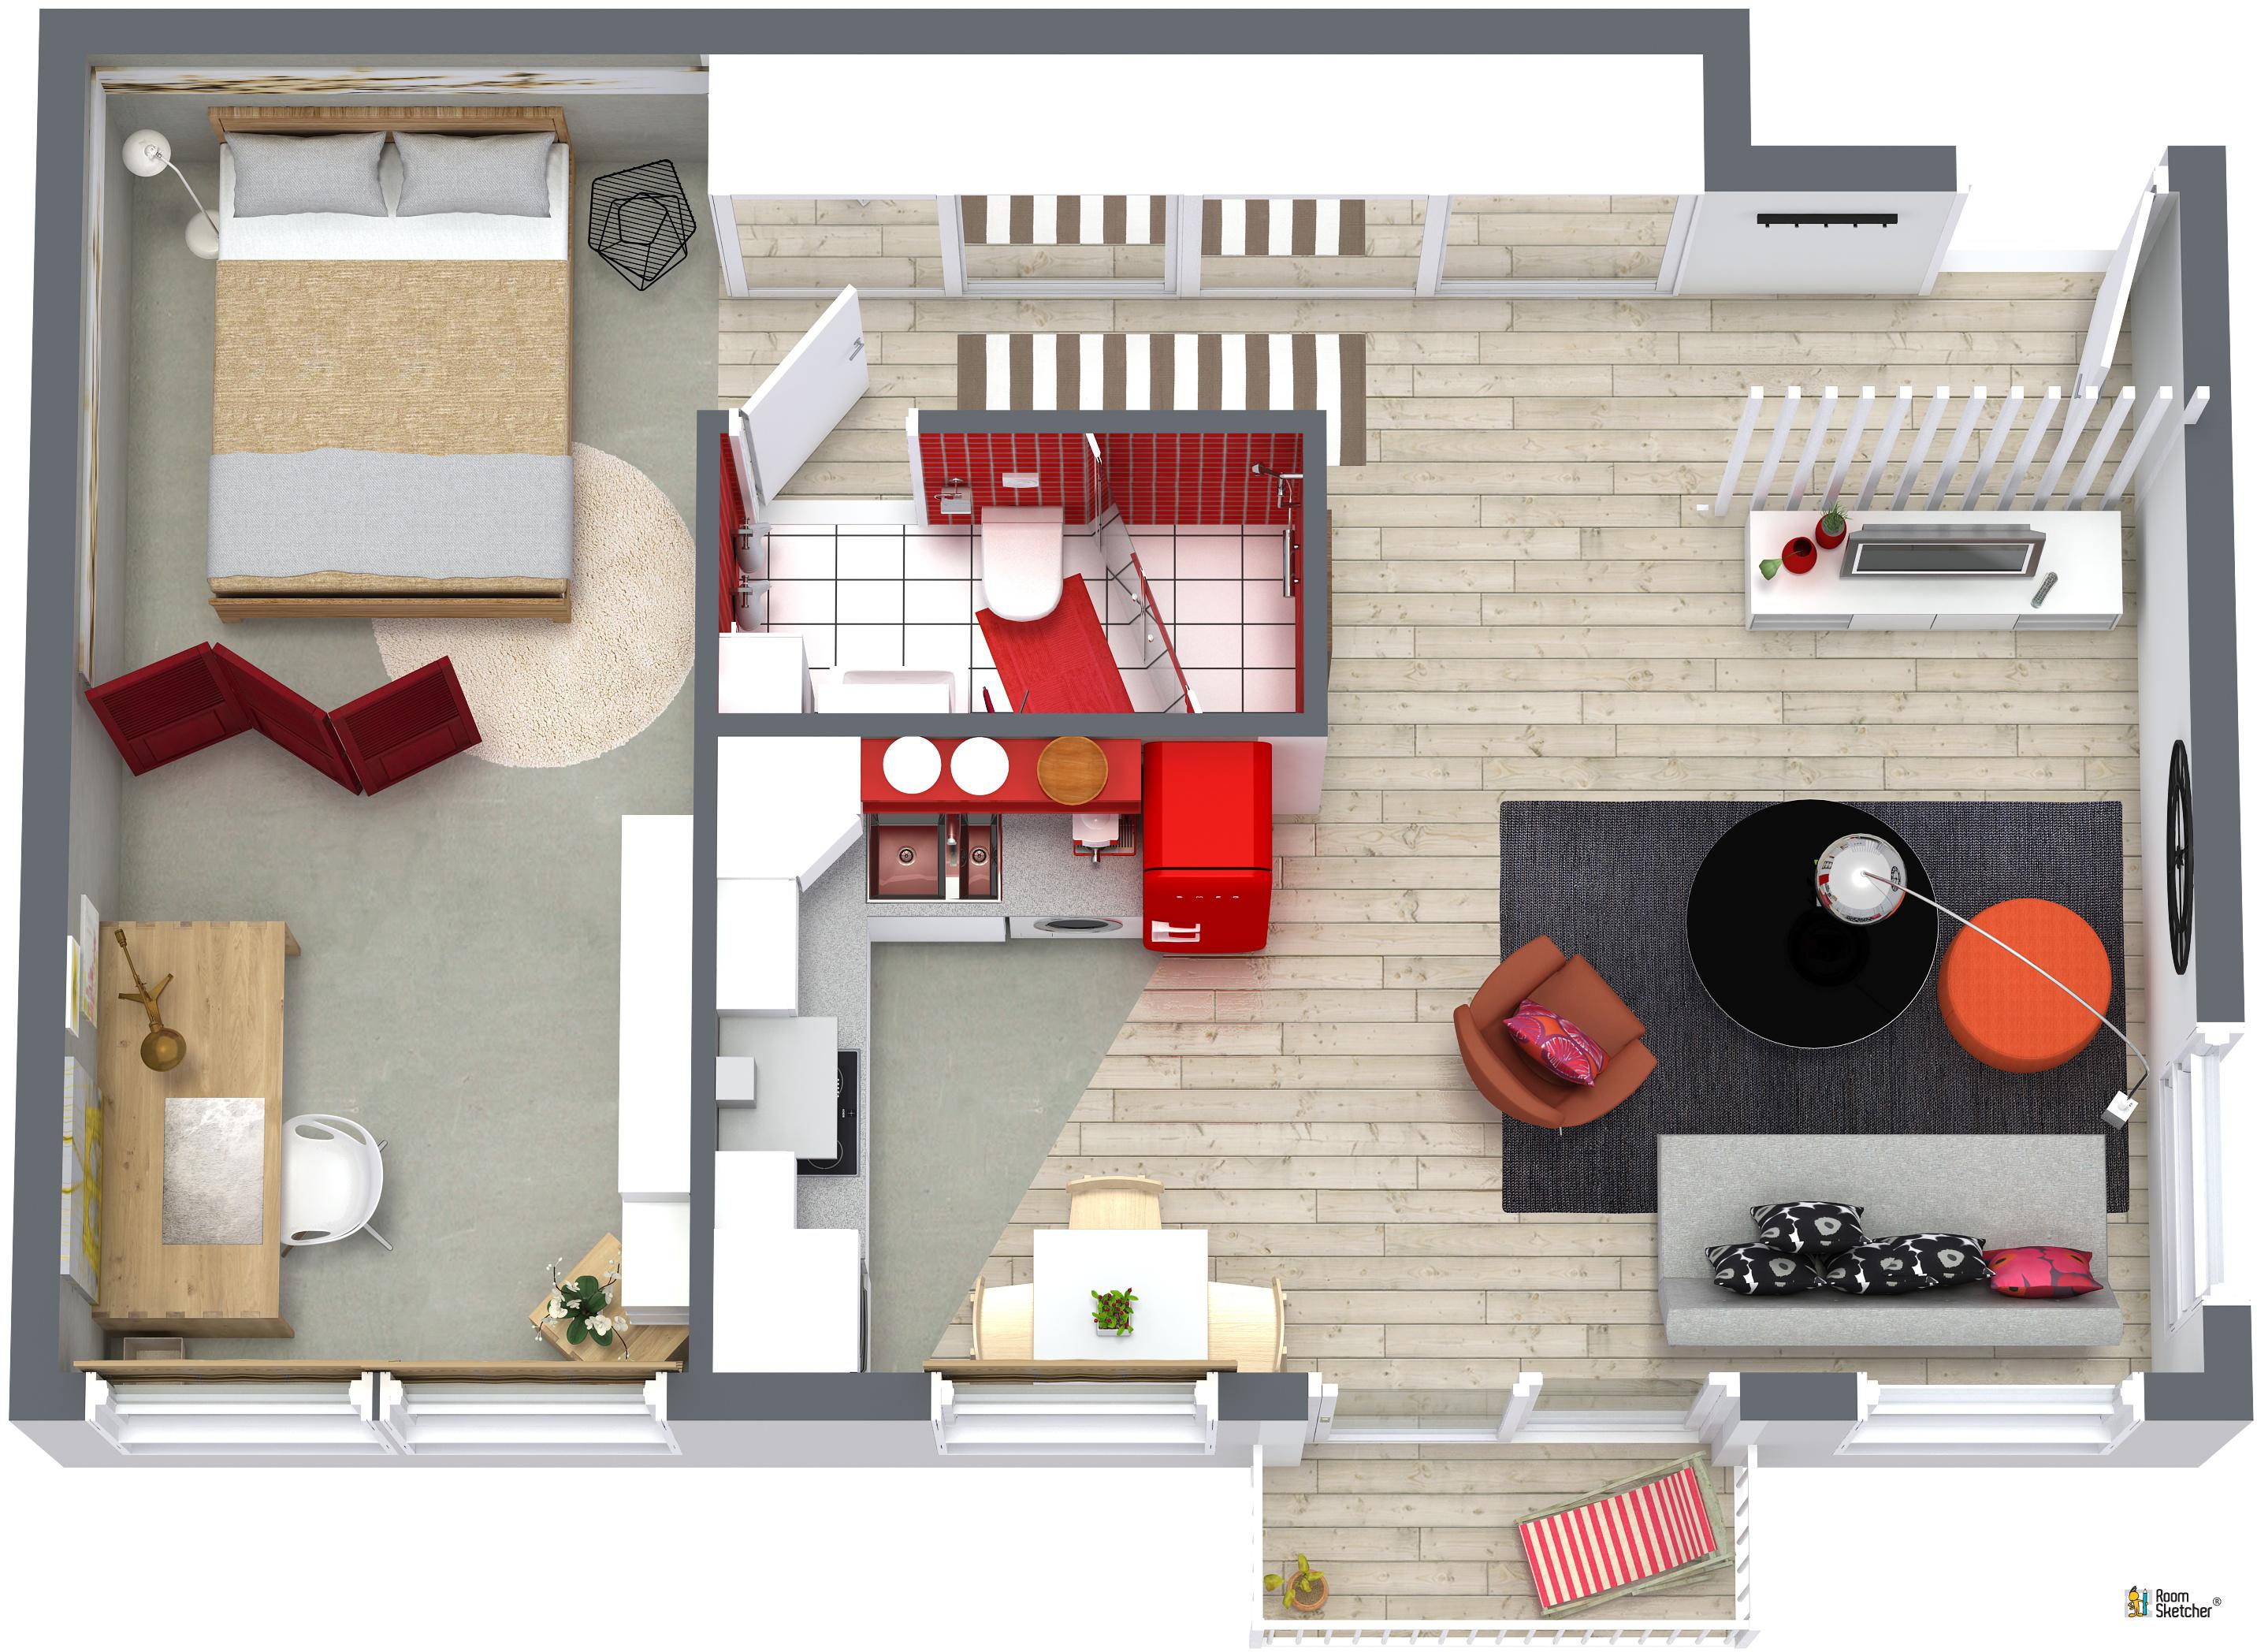 RoomSketcher Wohnidee: Kleine Wohnung einrichten - 3D Grundriss #grundriss #kleinerraum #kleinewohnungeinrichten ©RoomSketcher